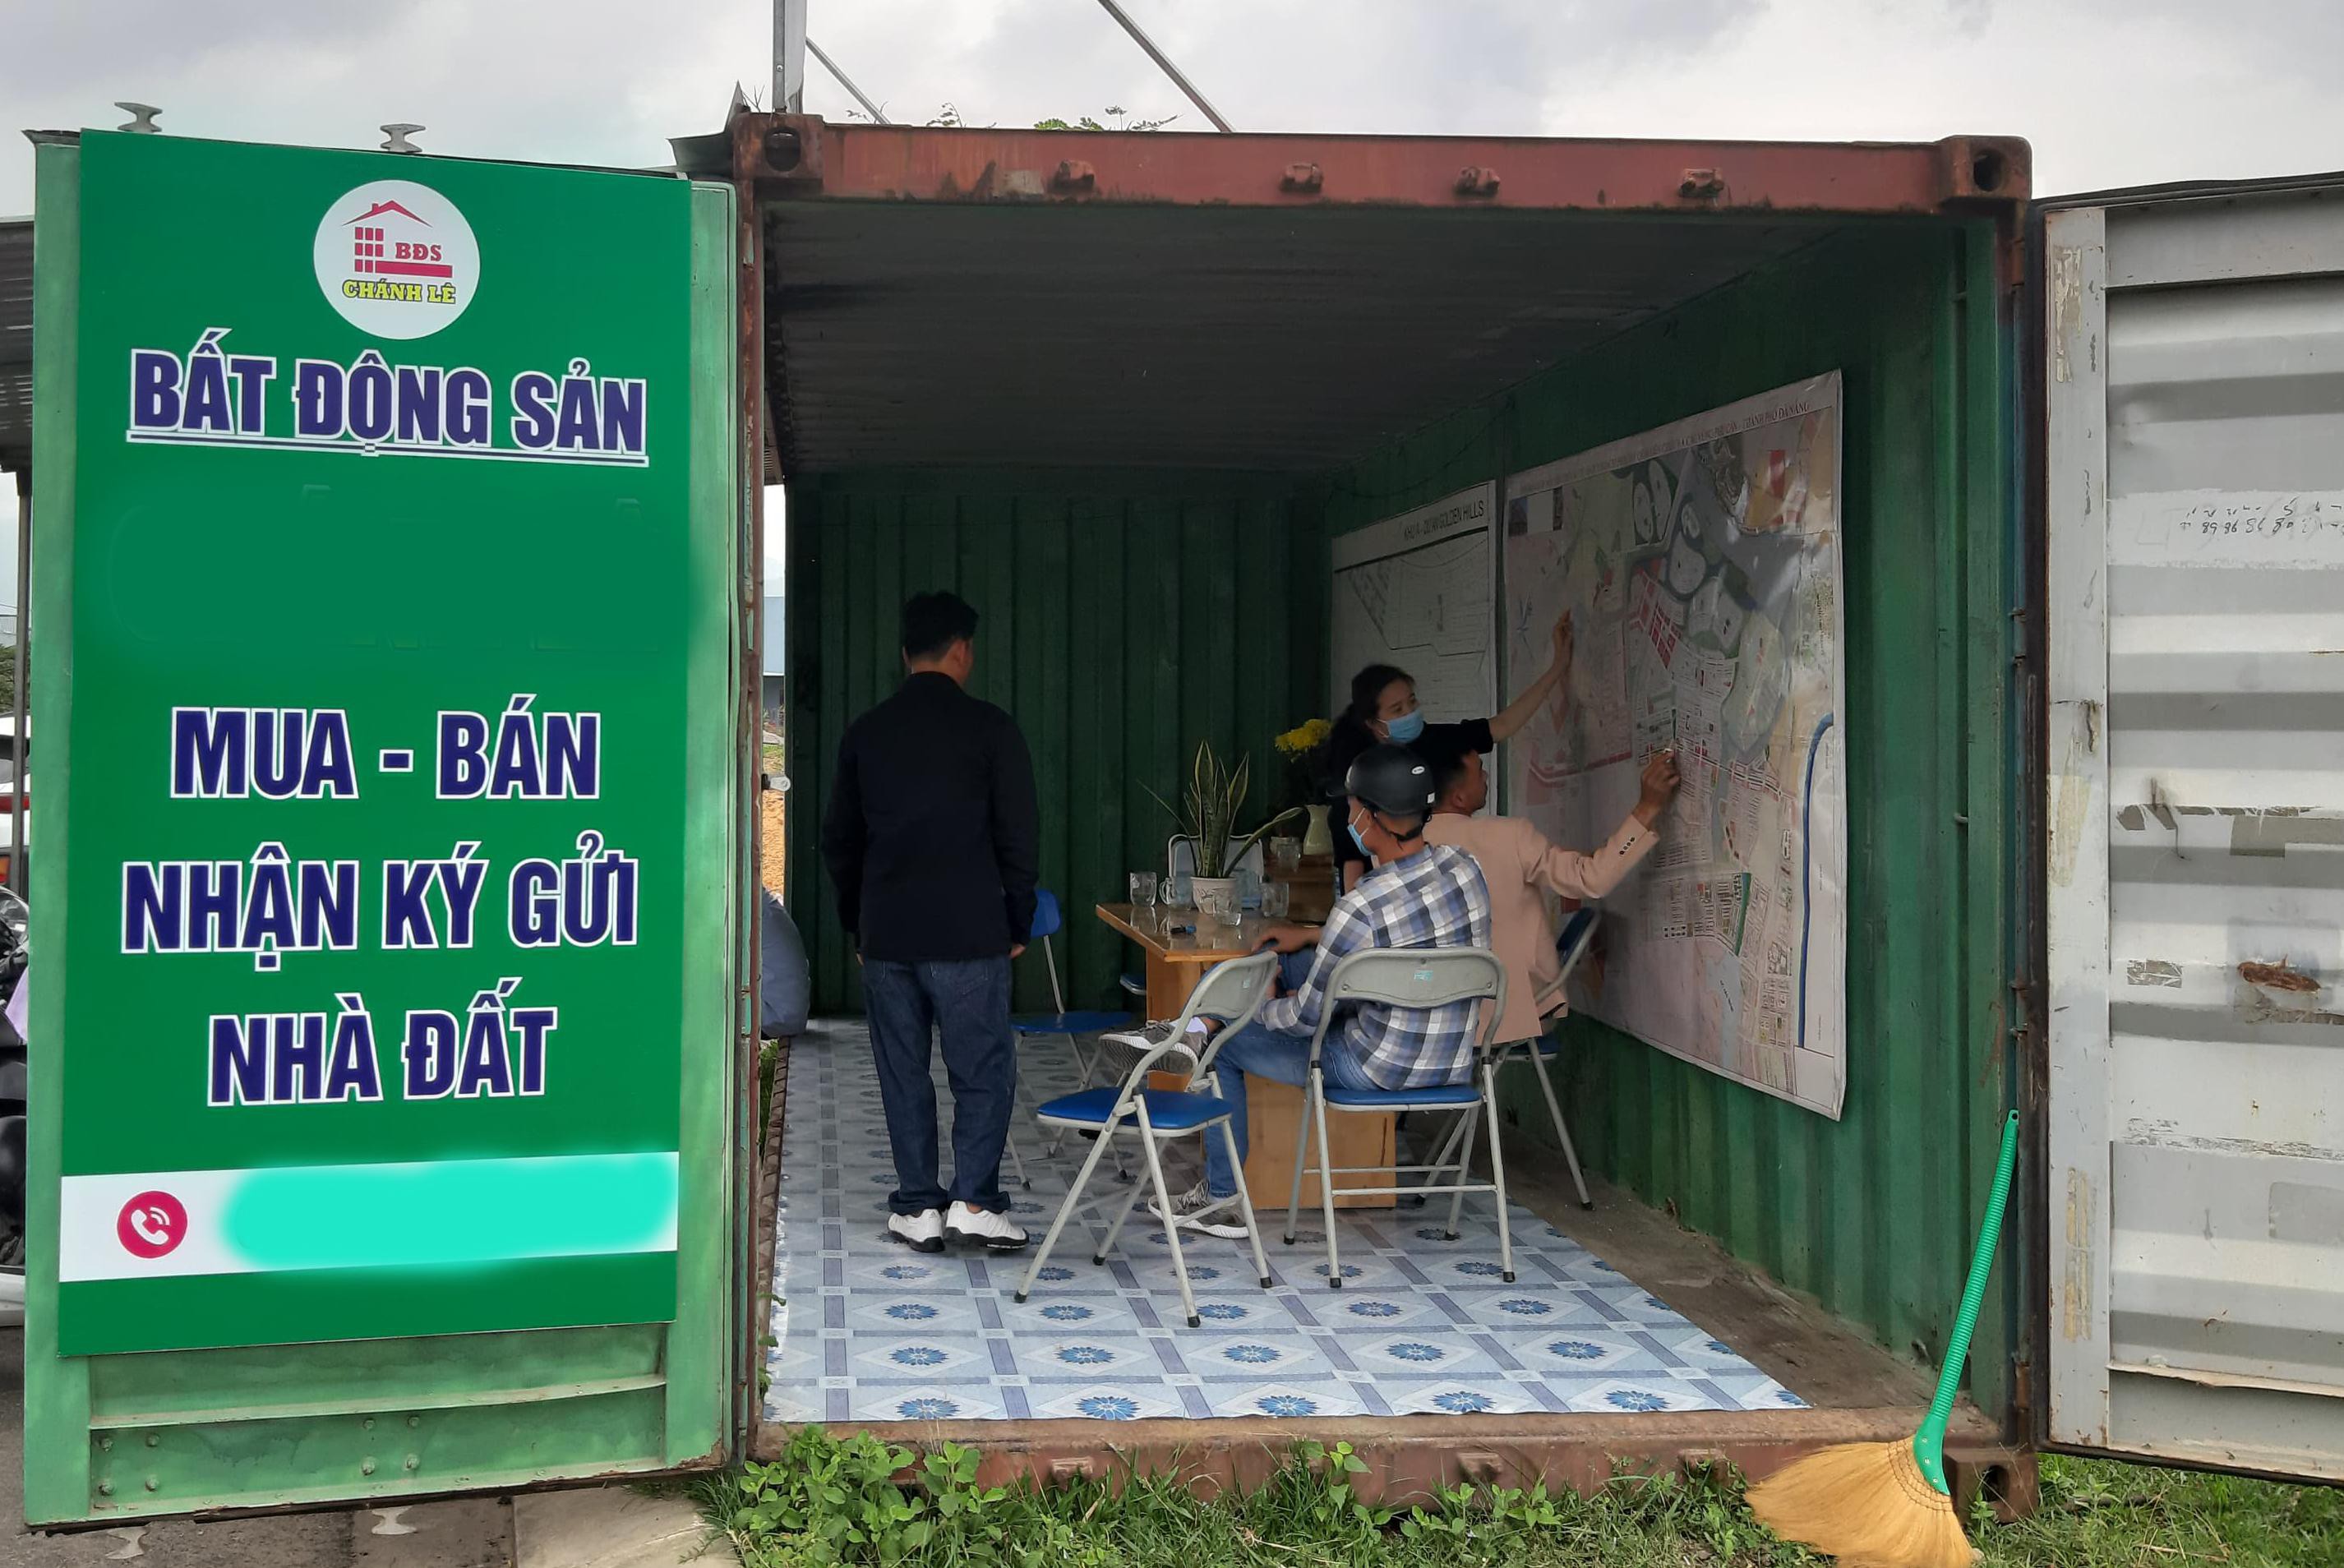 Tranh chấp bất động sản ở Đà Nẵng ngày càng phức tạp vì biến động giá